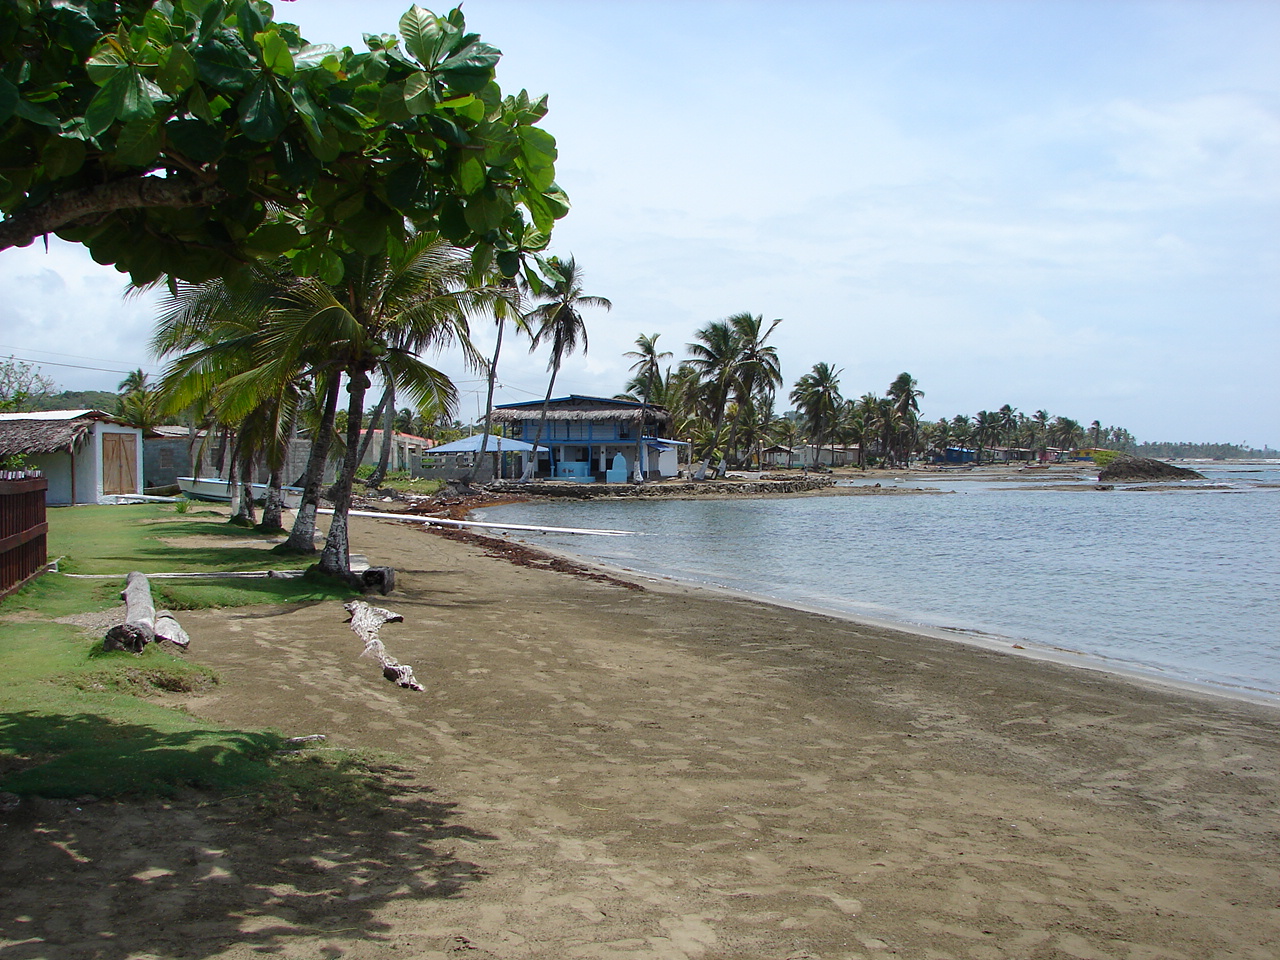 Fotografie cu Nombre Dios Beach cu o suprafață de nisip maro